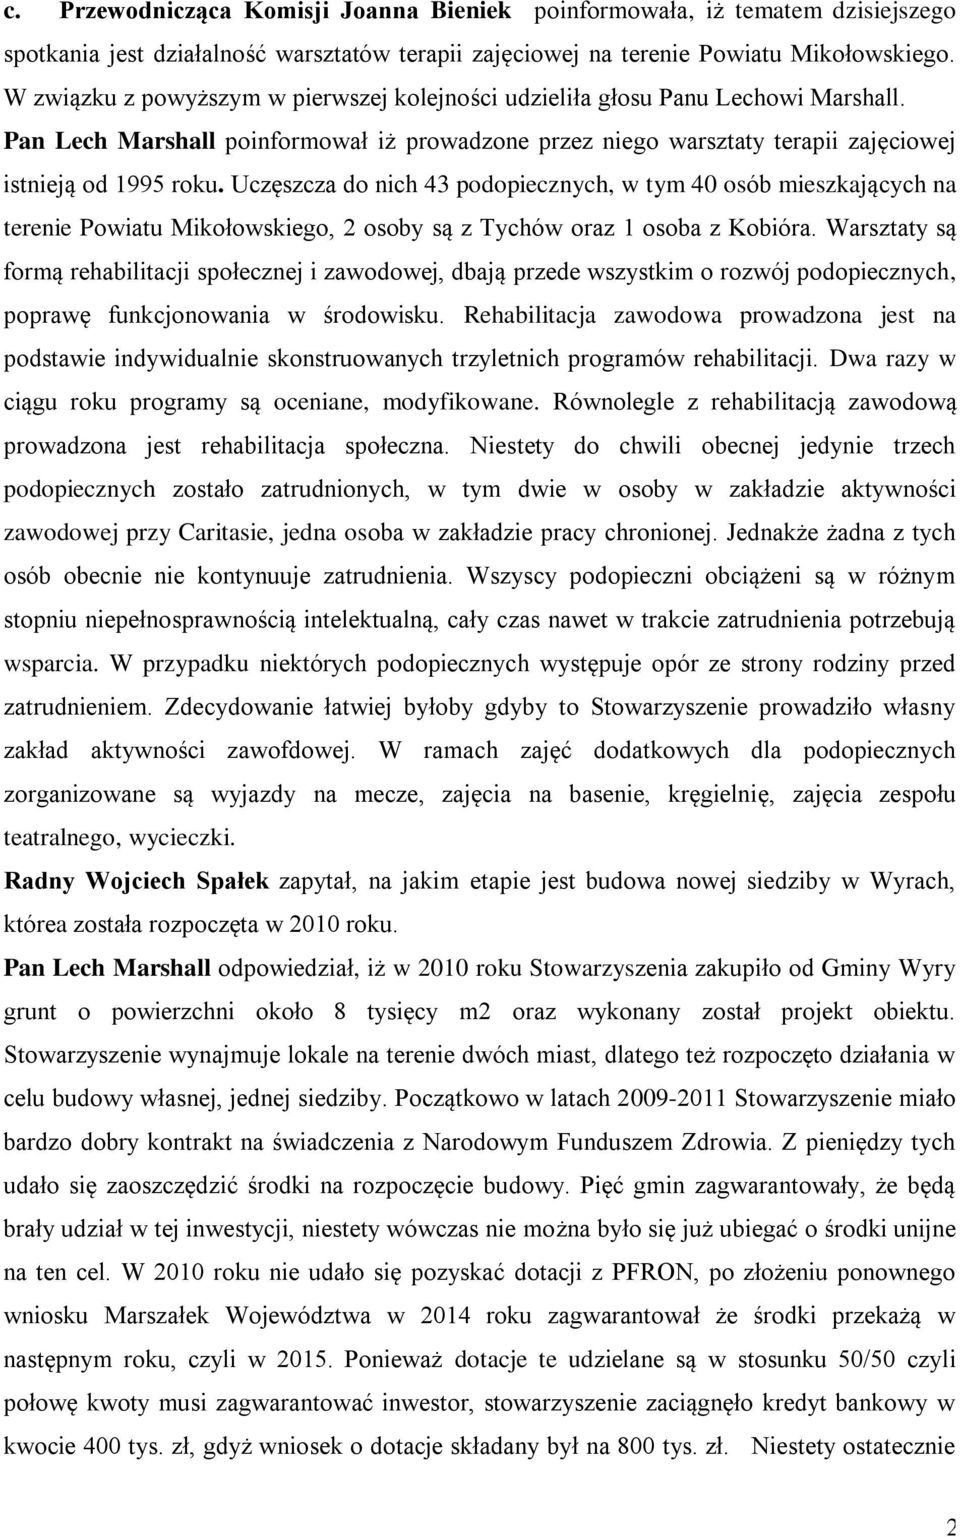 Uczęszcza do nich 43 podopiecznych, w tym 40 osób mieszkających na terenie Powiatu Mikołowskiego, 2 osoby są z Tychów oraz 1 osoba z Kobióra.